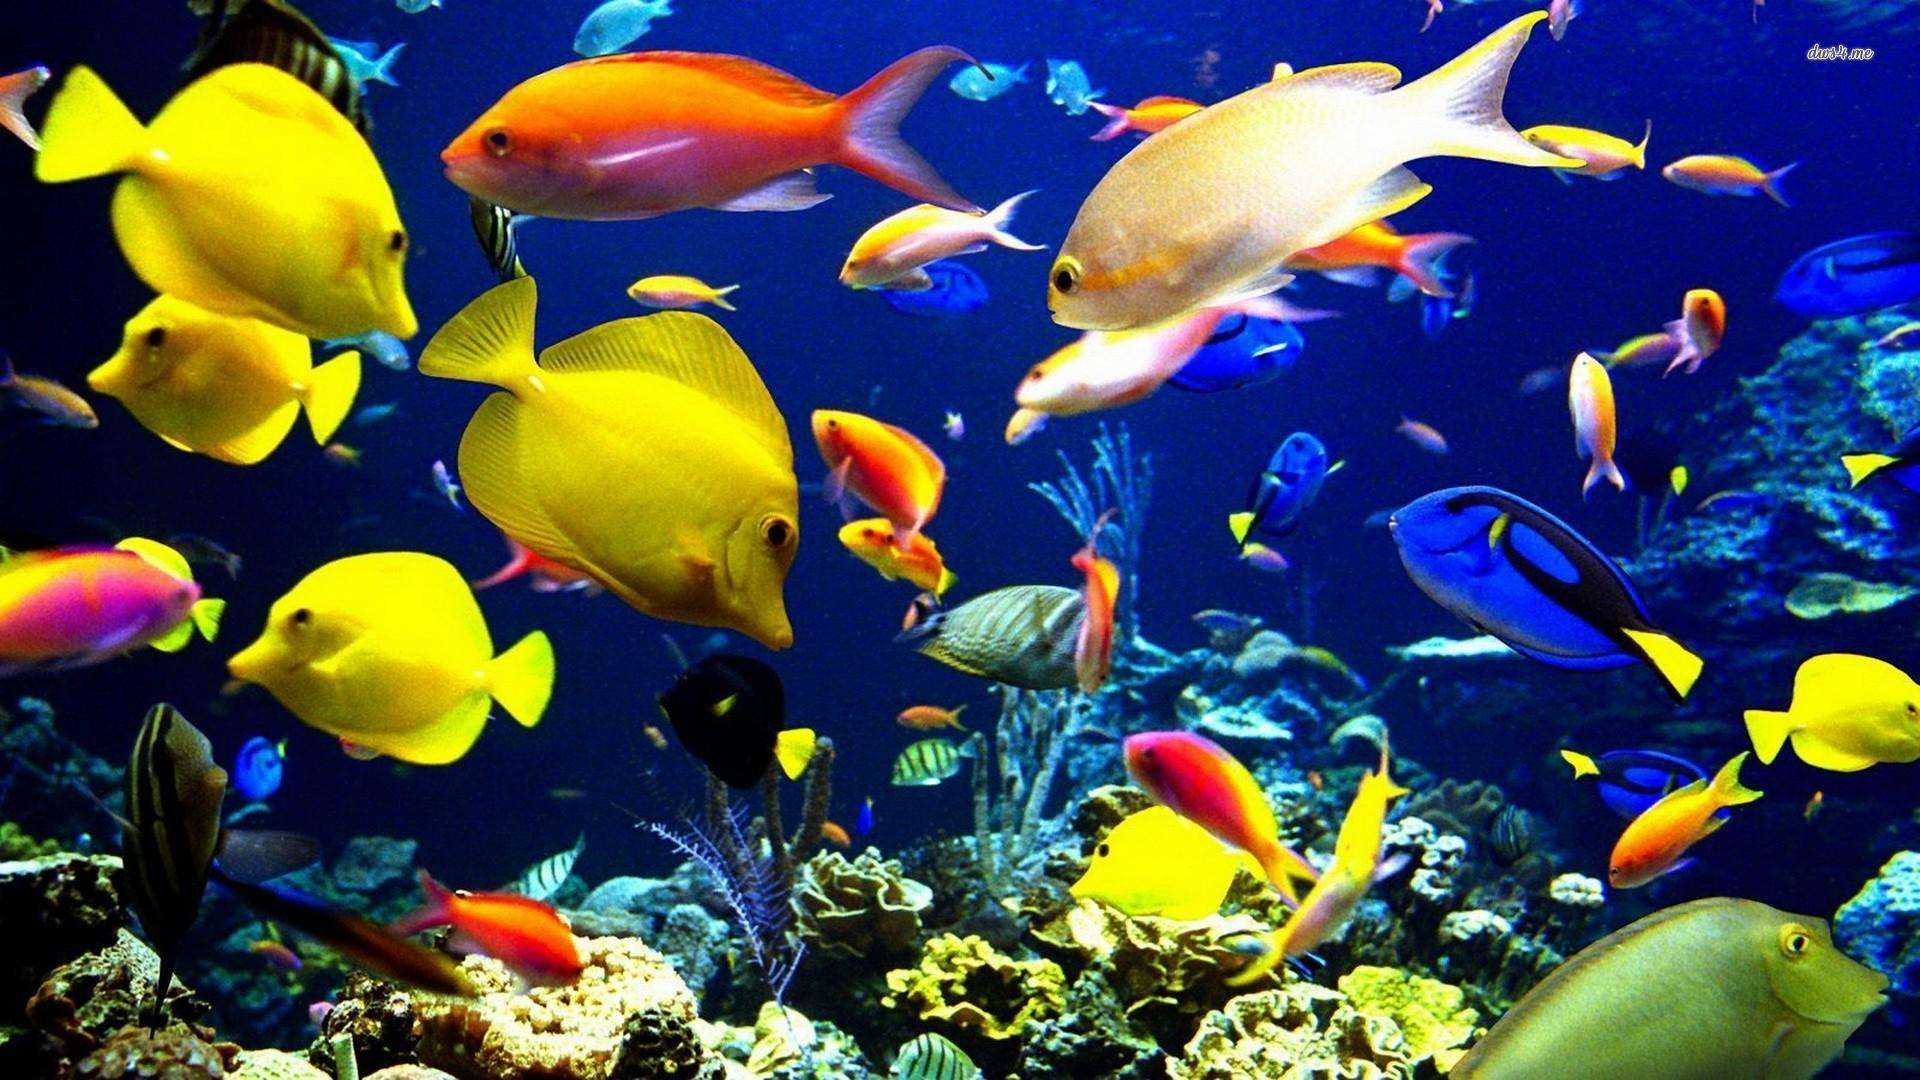 जानिए कैसे मछली की ये प्रजाति जलवायु परिवर्तन के कारण प्रभावित हो रही है?